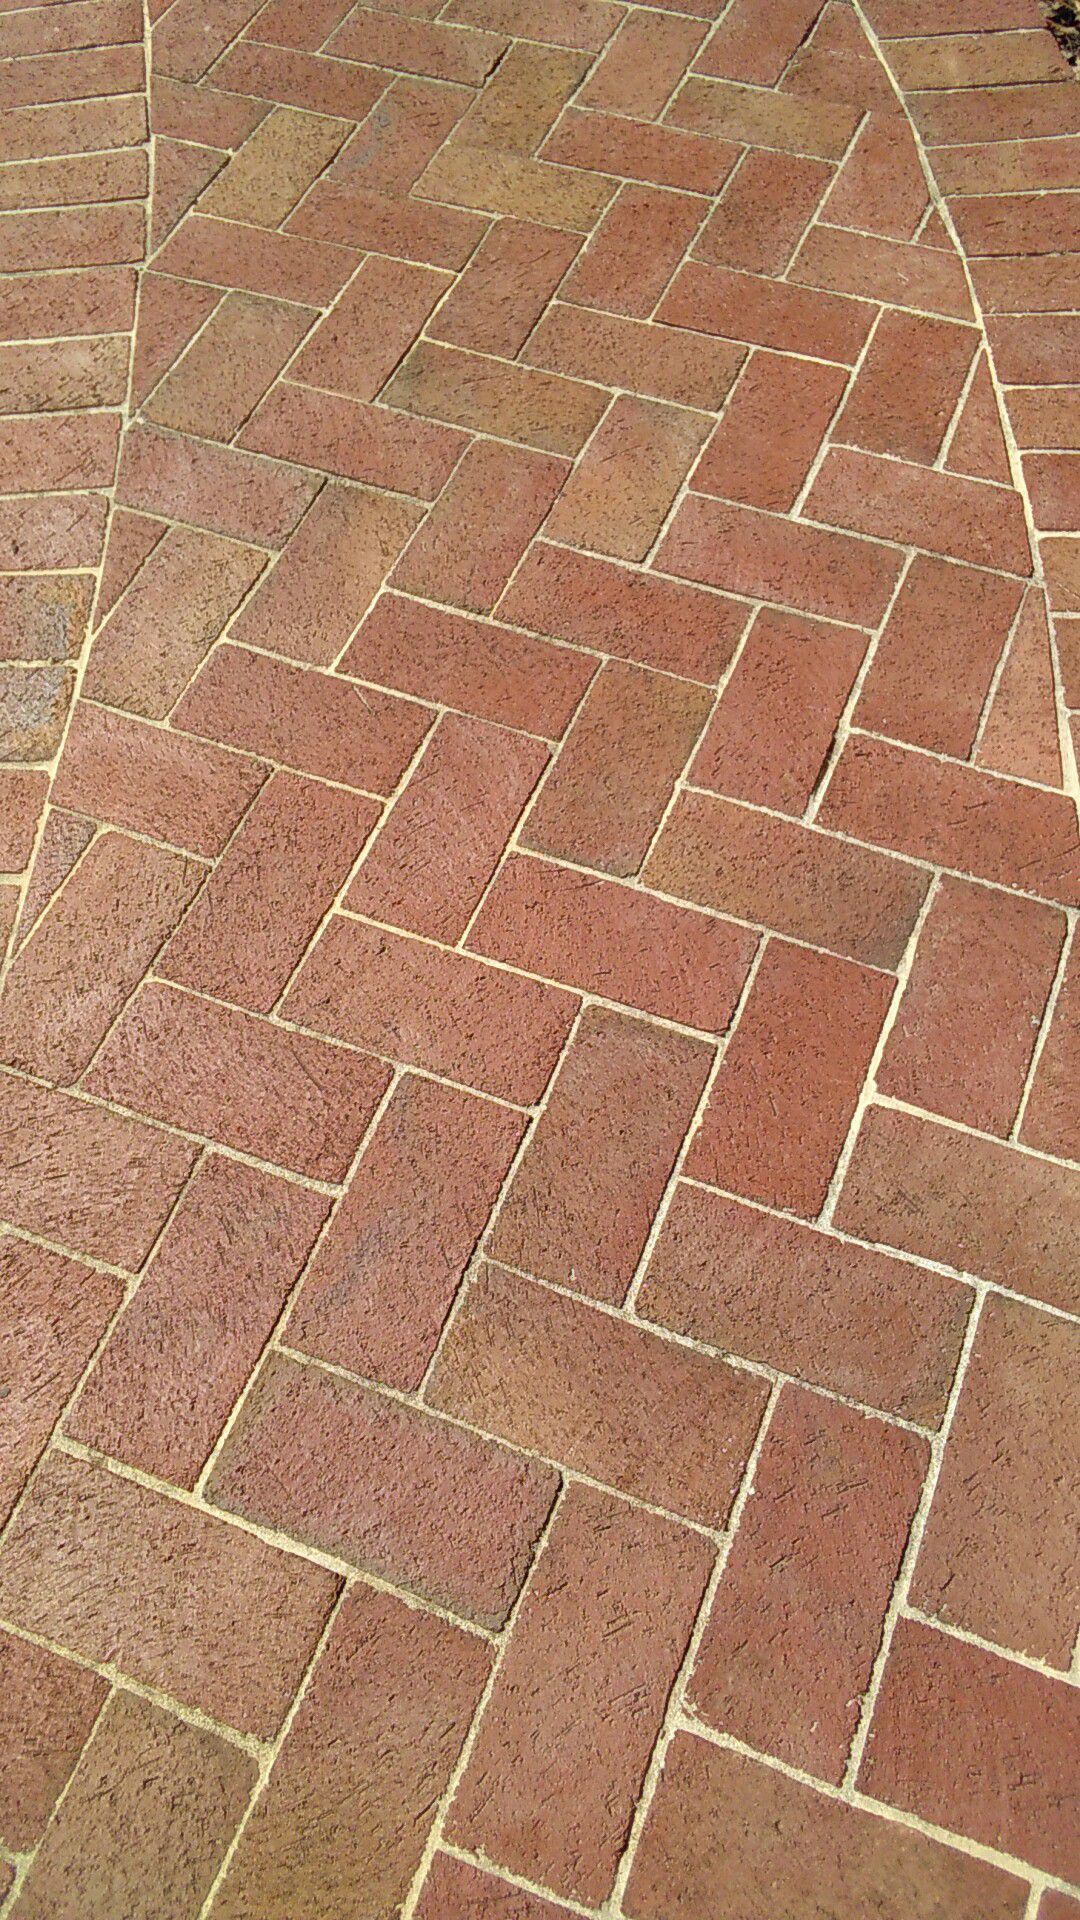 Red brick pavers